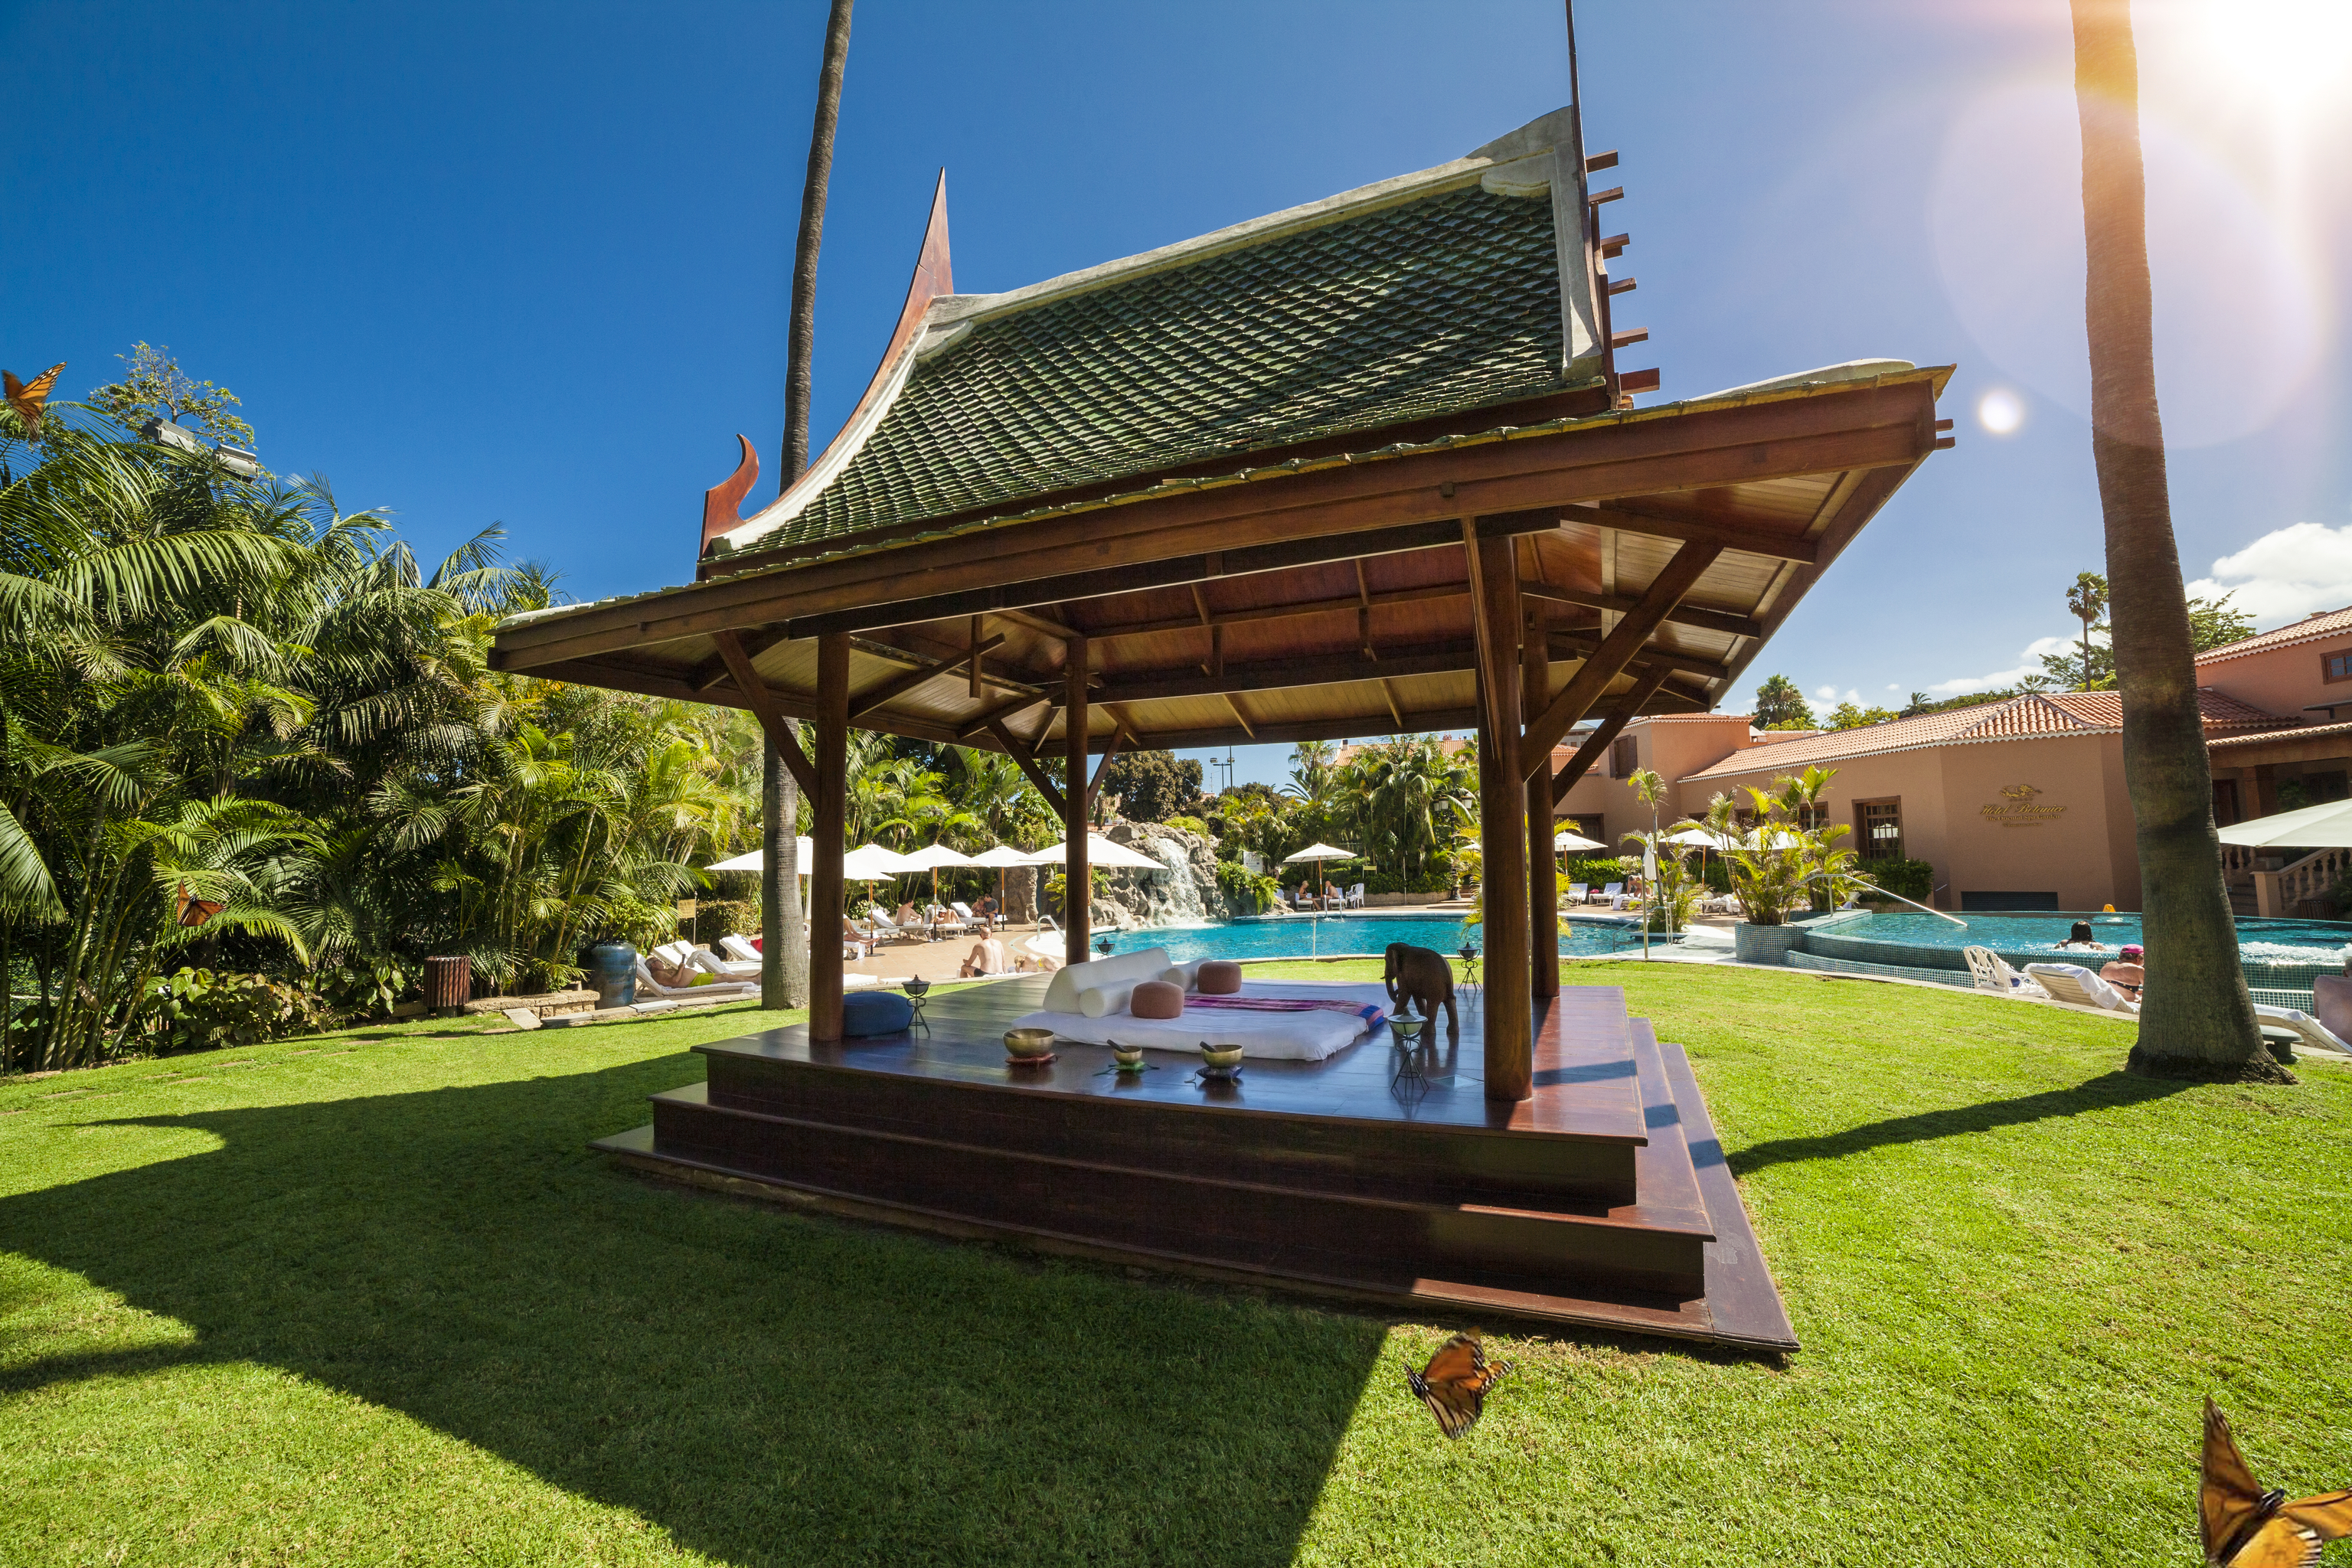 El spa cuenta con una pagoda tailandesa para masajes orientales al aire libre.